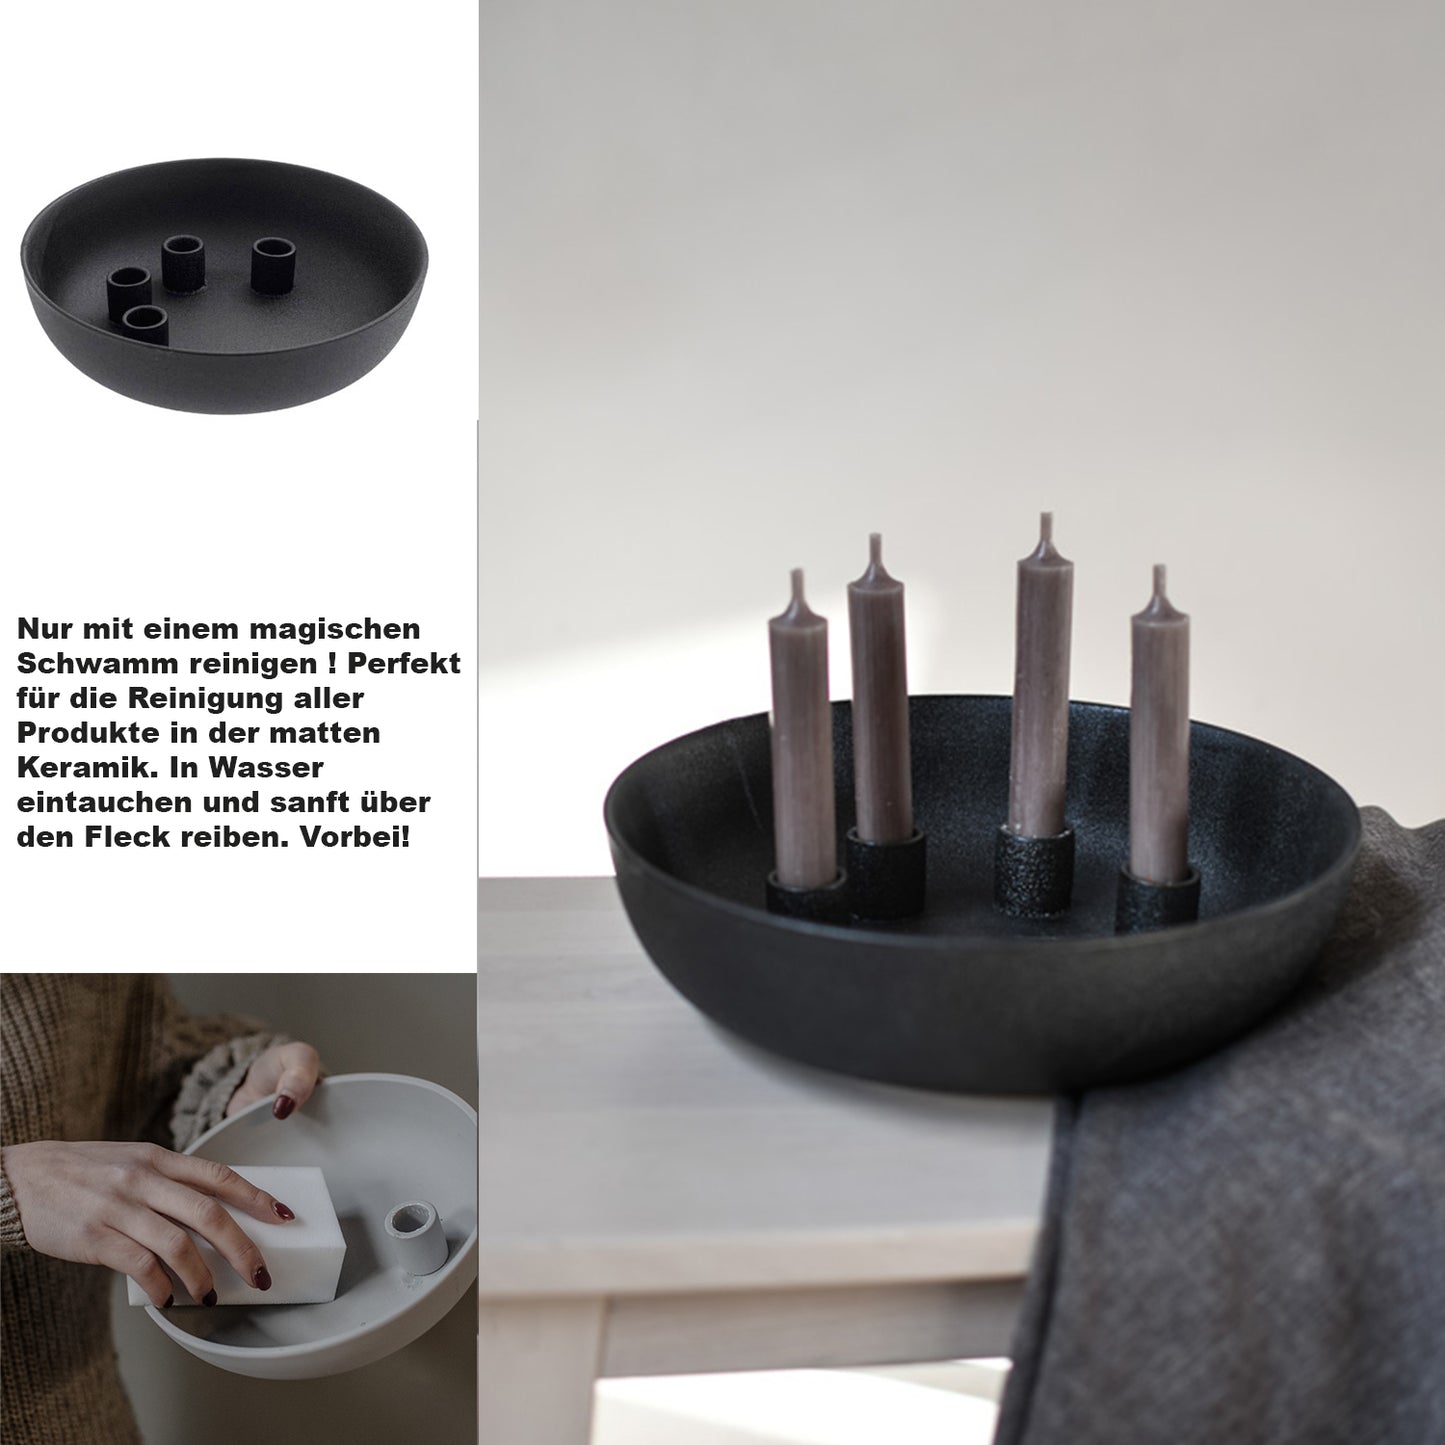 Kvistbro Kerzenhalter, Ø 26 x H 7 cm, für 4 Kerzen, schwarz